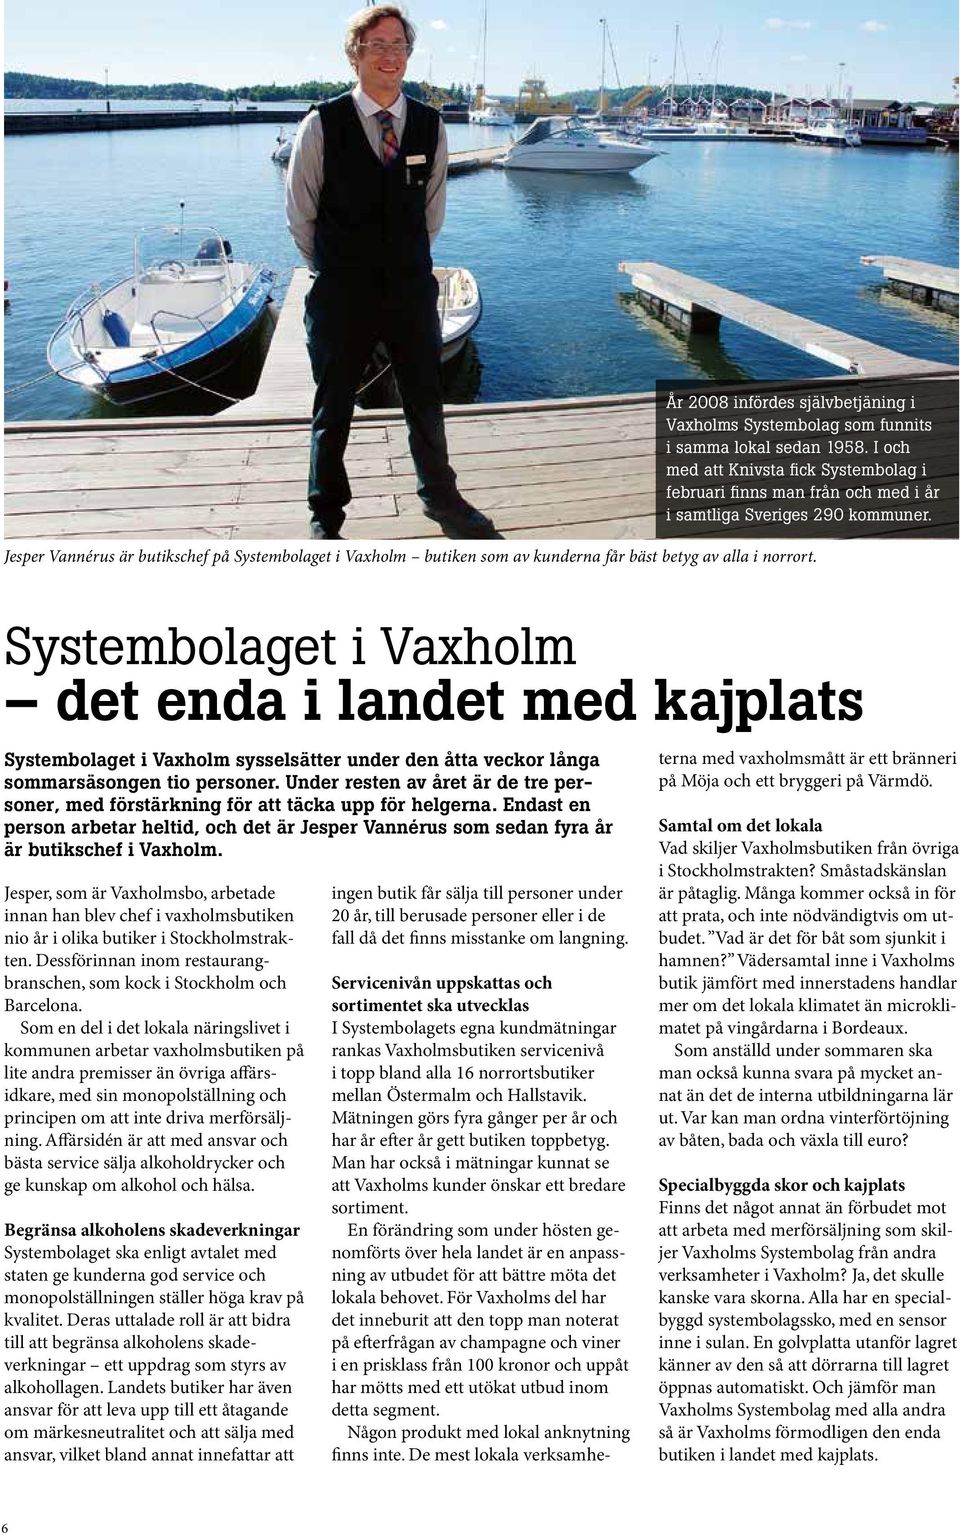 Jesper Vannérus är butikschef på Systembolaget i Vaxholm butiken som av kunderna får bäst betyg av alla i norrort.